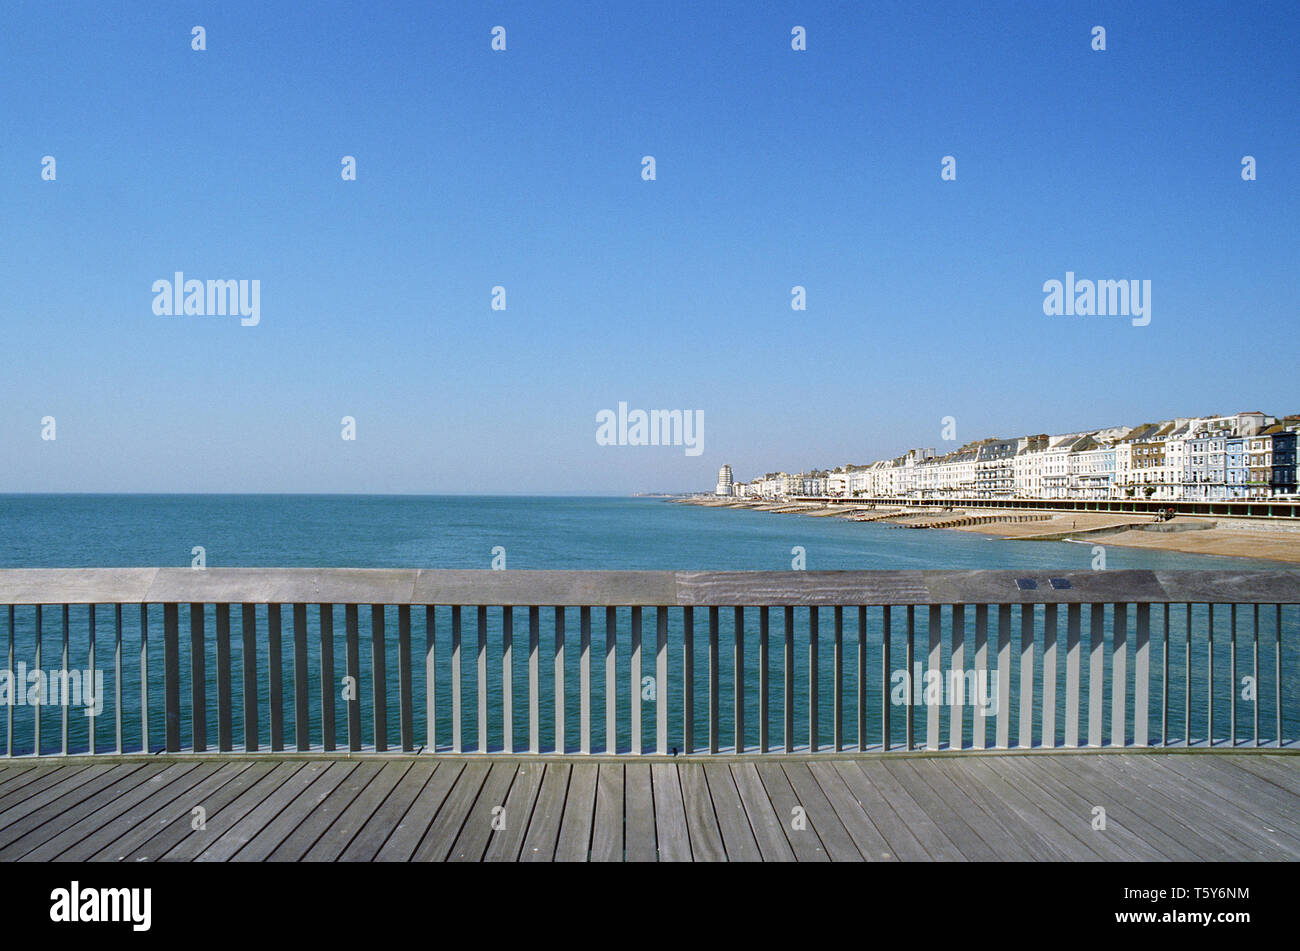 Vue du front de mer de St Leonards On Sea East Sussex sur la côte, à l'ouest de Hastings Pier Banque D'Images